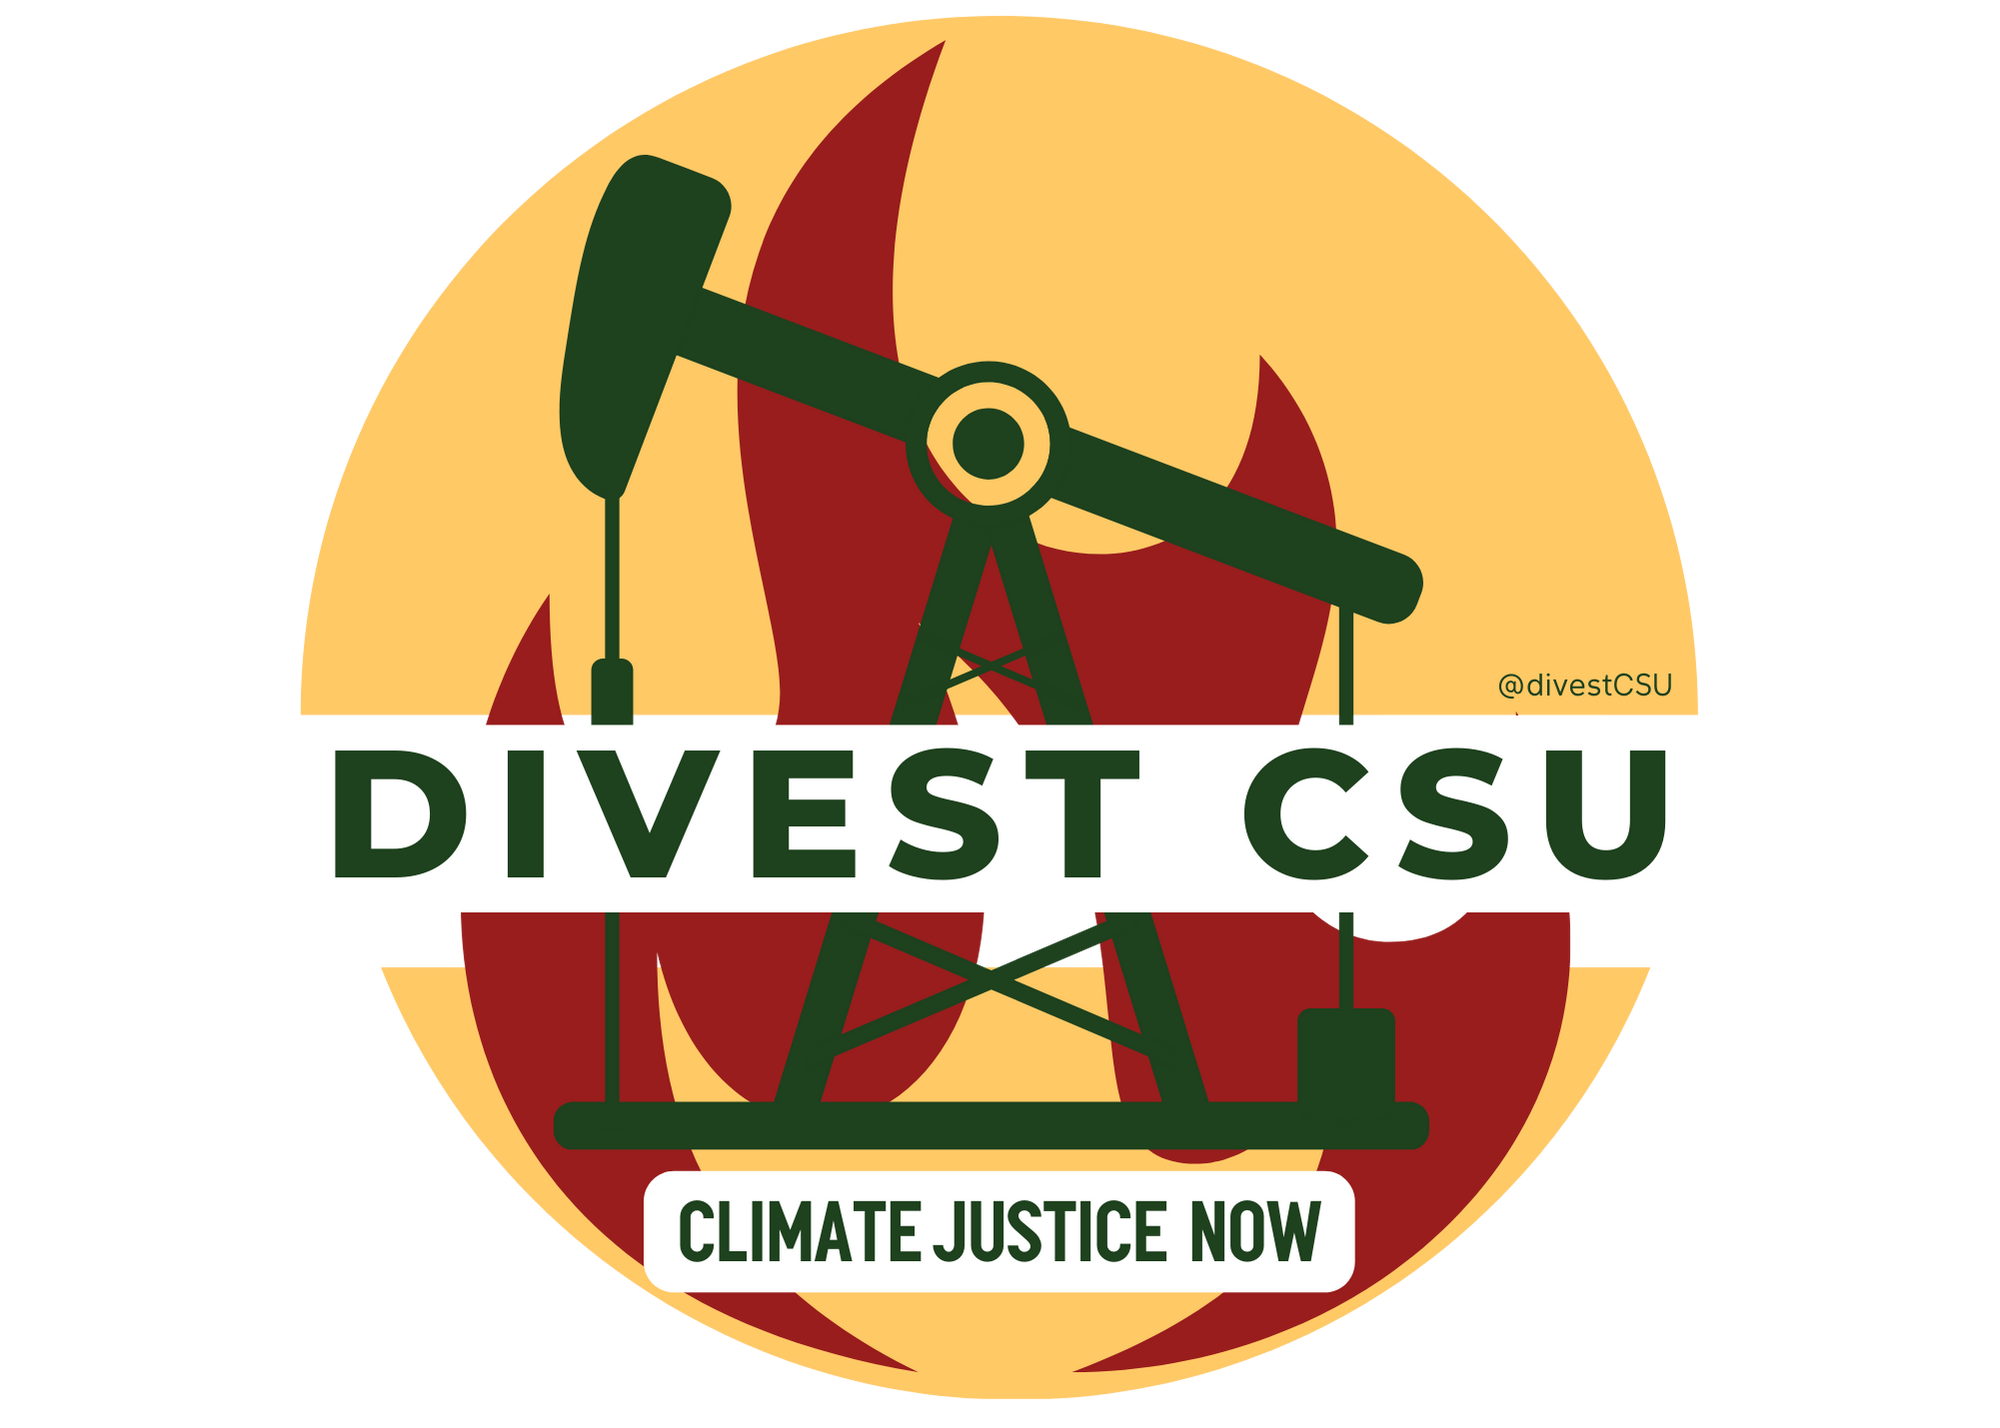 Divest CSU